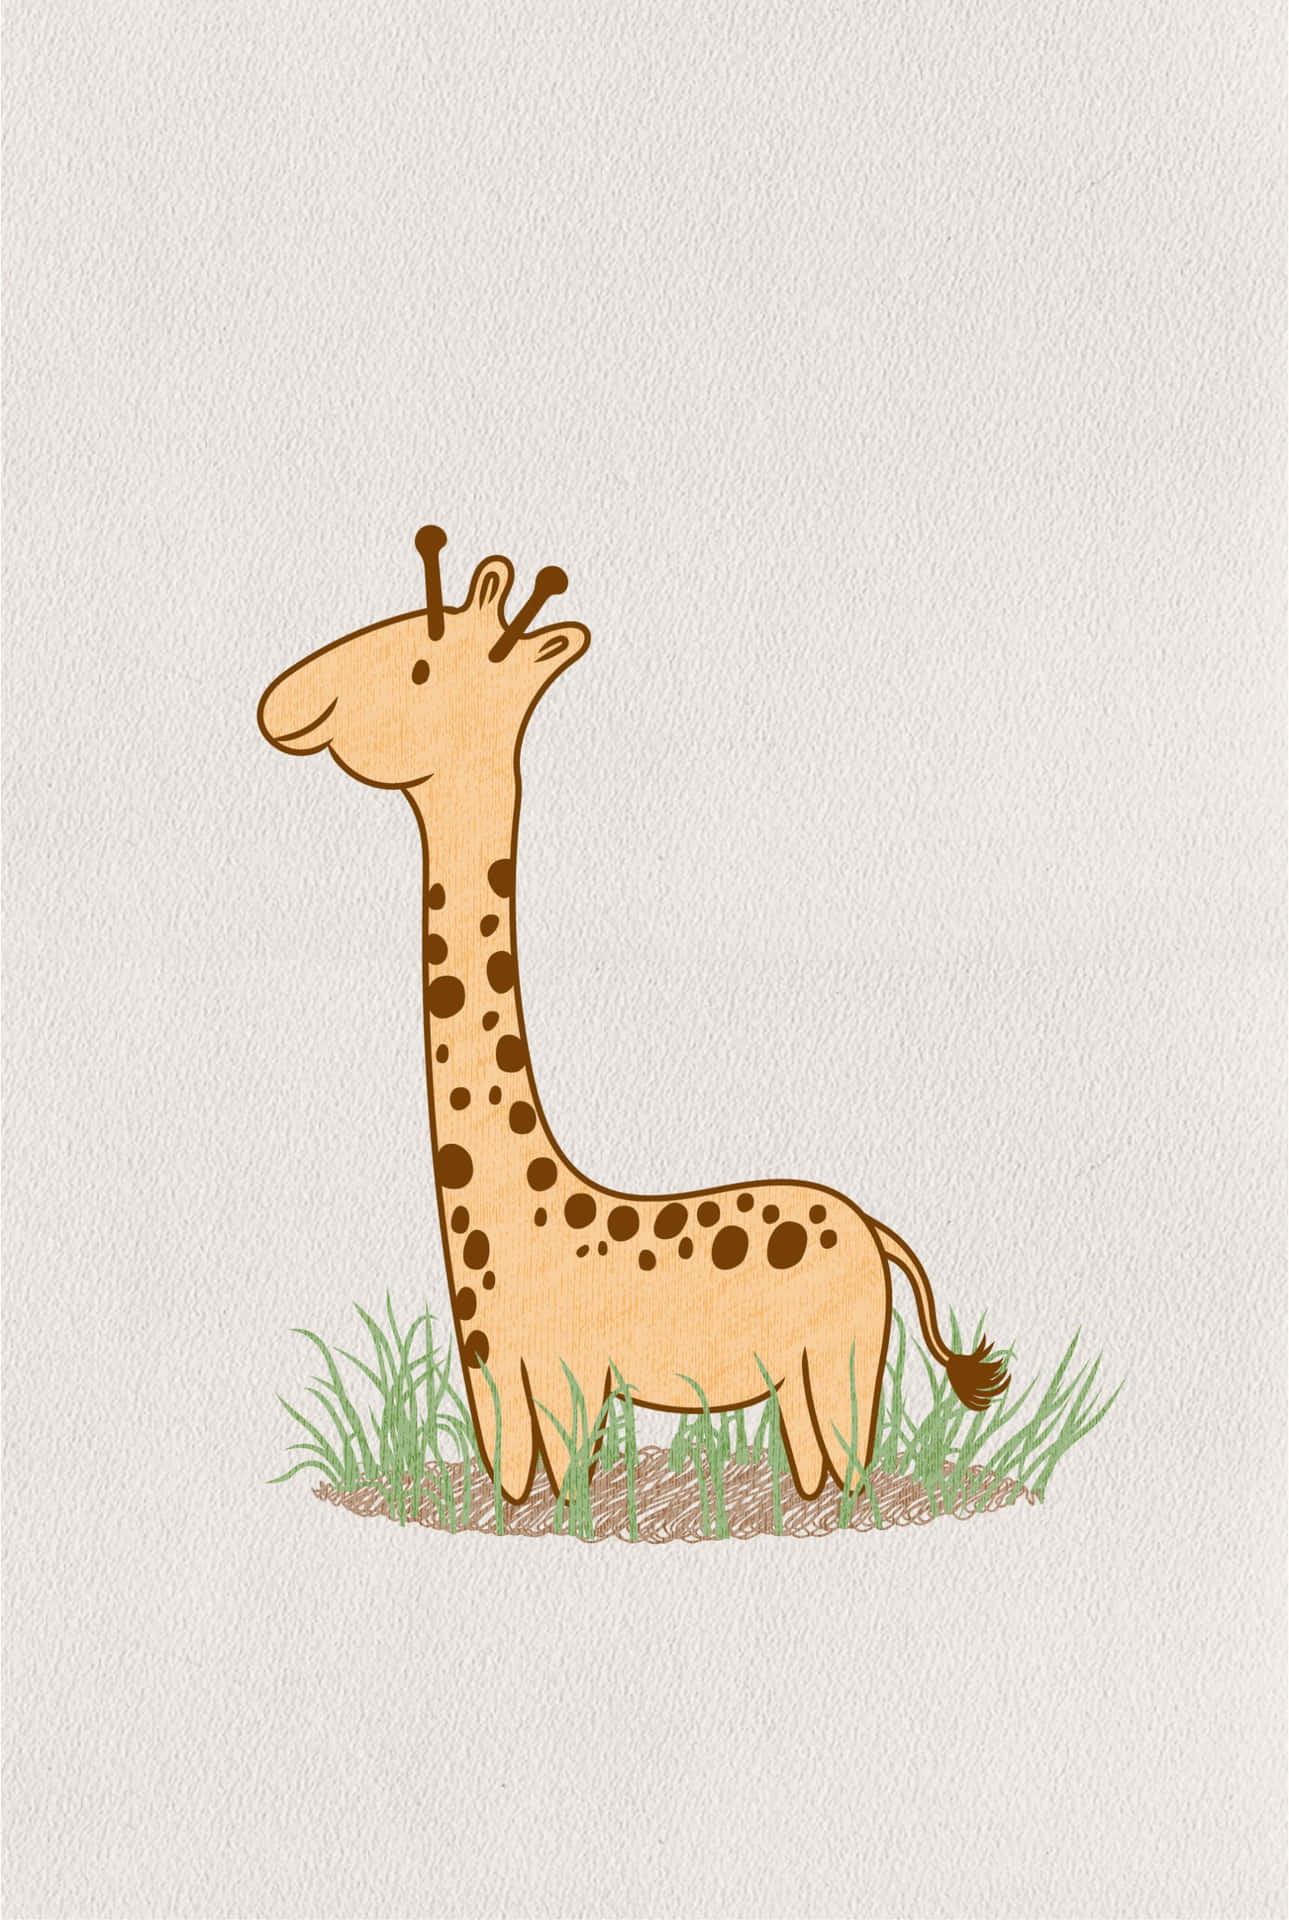 Cute Giraffe Cartoon On Grass Picture